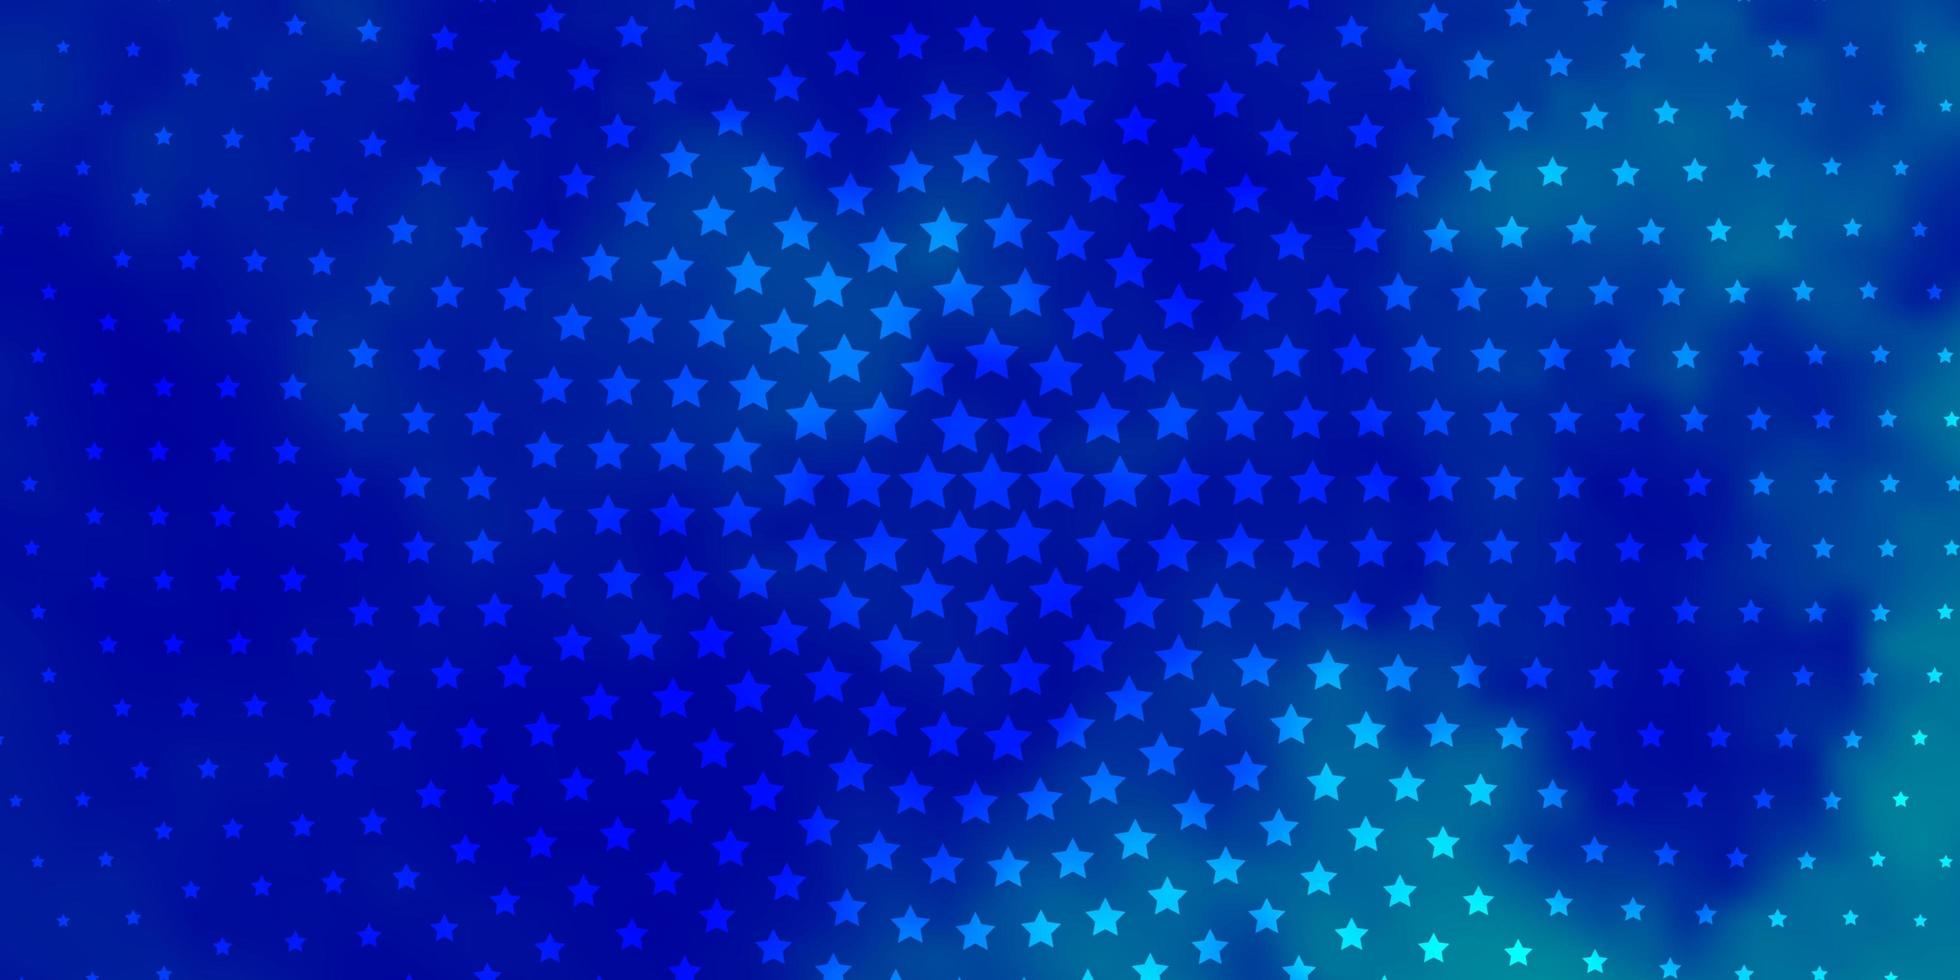 modello vettoriale azzurro con stelle al neon